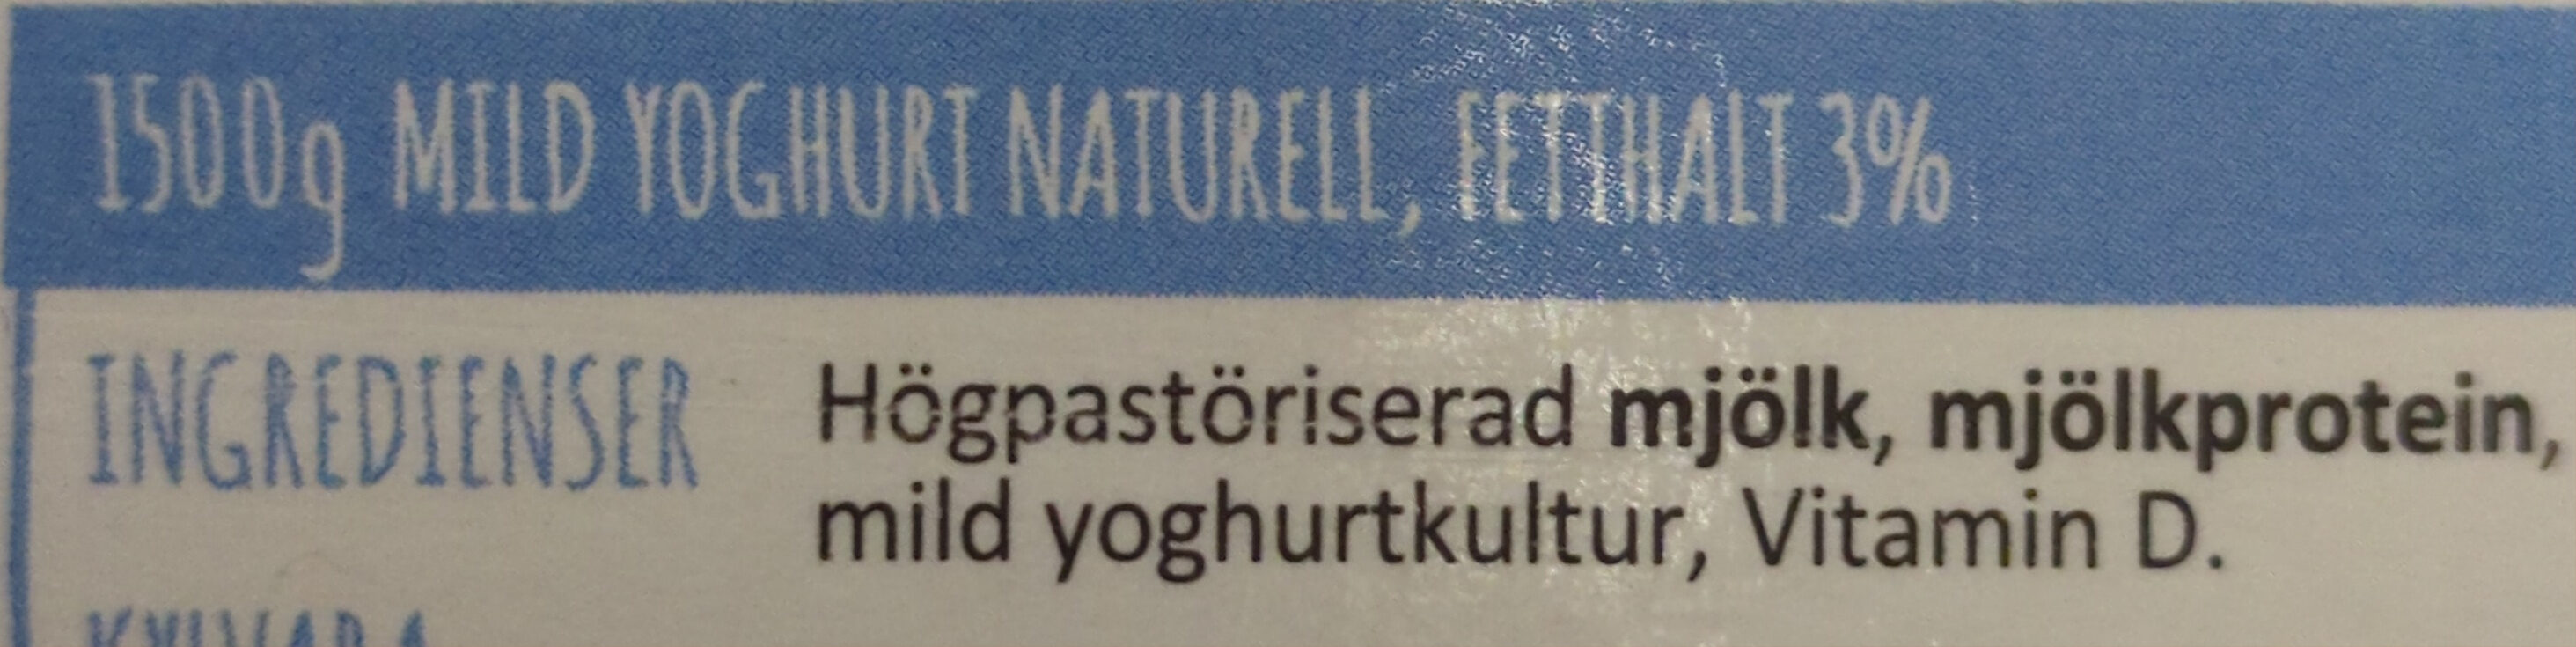 Mild yoghurt naturell - Ingredienser